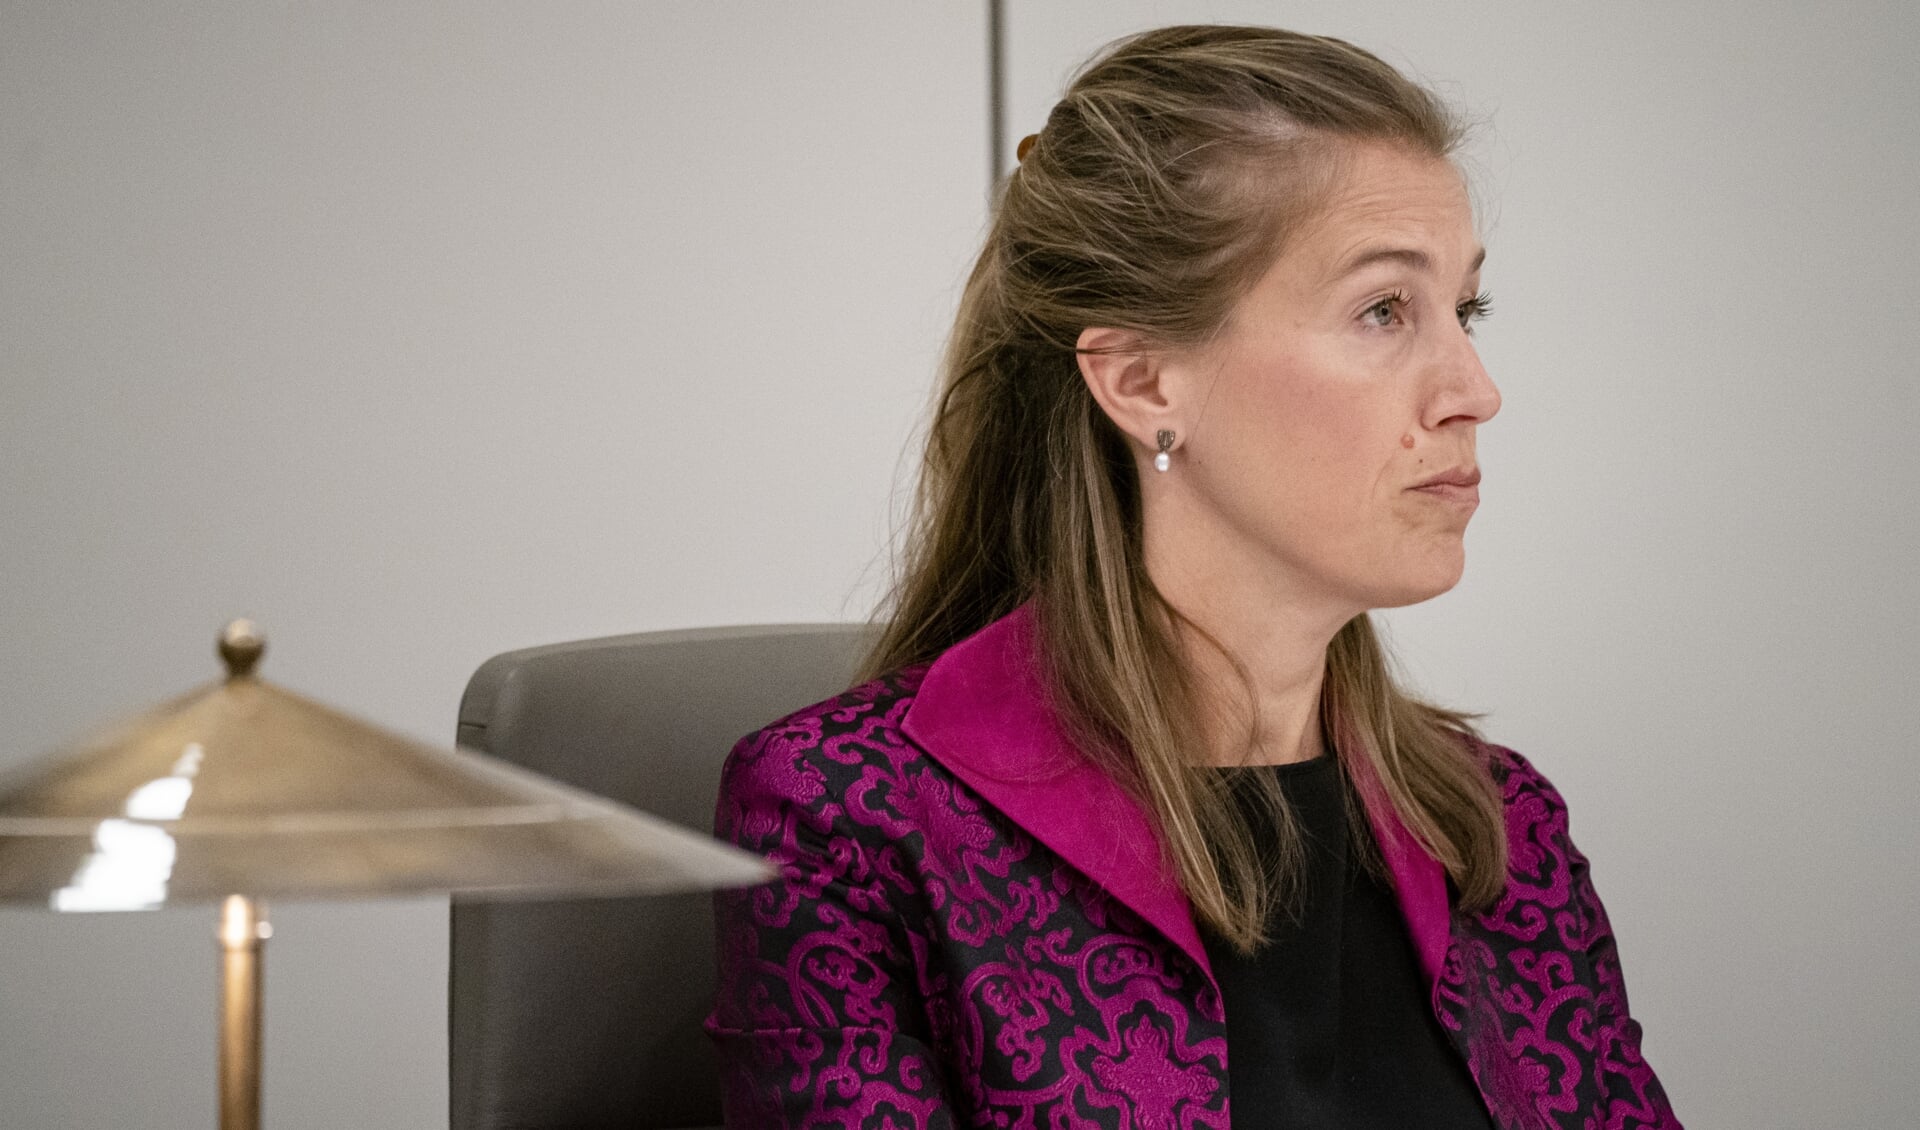 Corinne Ellemeet van GroenLinks verdedigde het wetsvoorstel voor de abortuspil bij de huisarts dinsdag in de Eerste Kamer. 